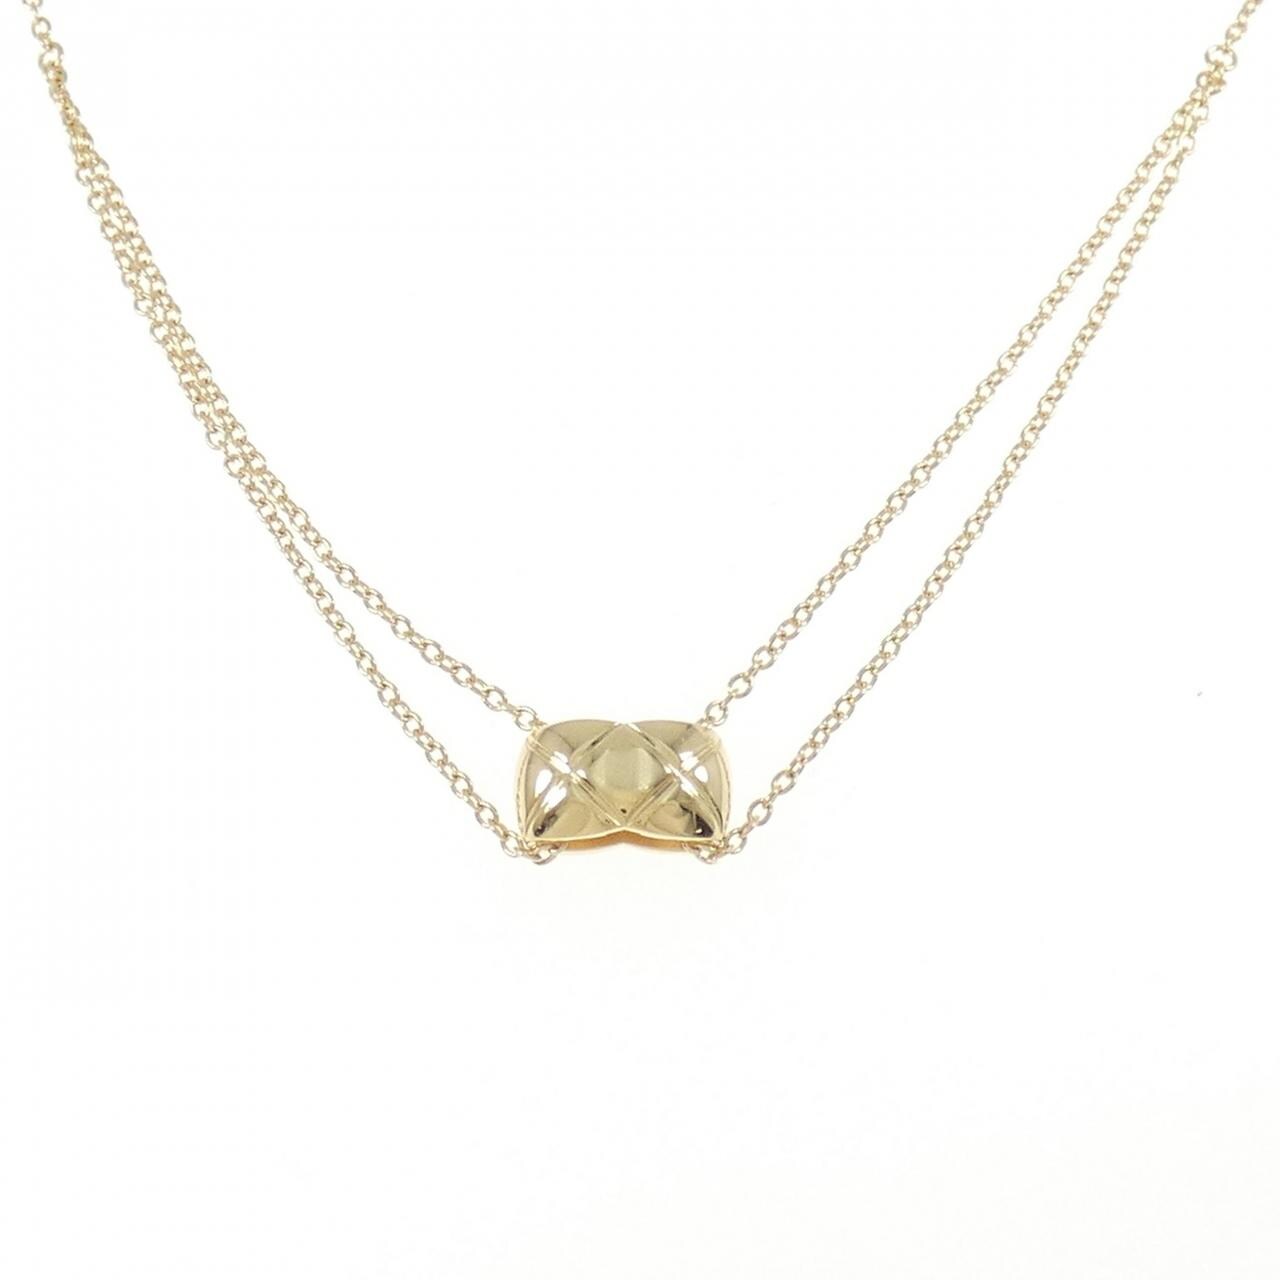 Coco necklace - 3599591933820 | CHANEL | Dream jewelry, Fine jewelry, High  jewelry